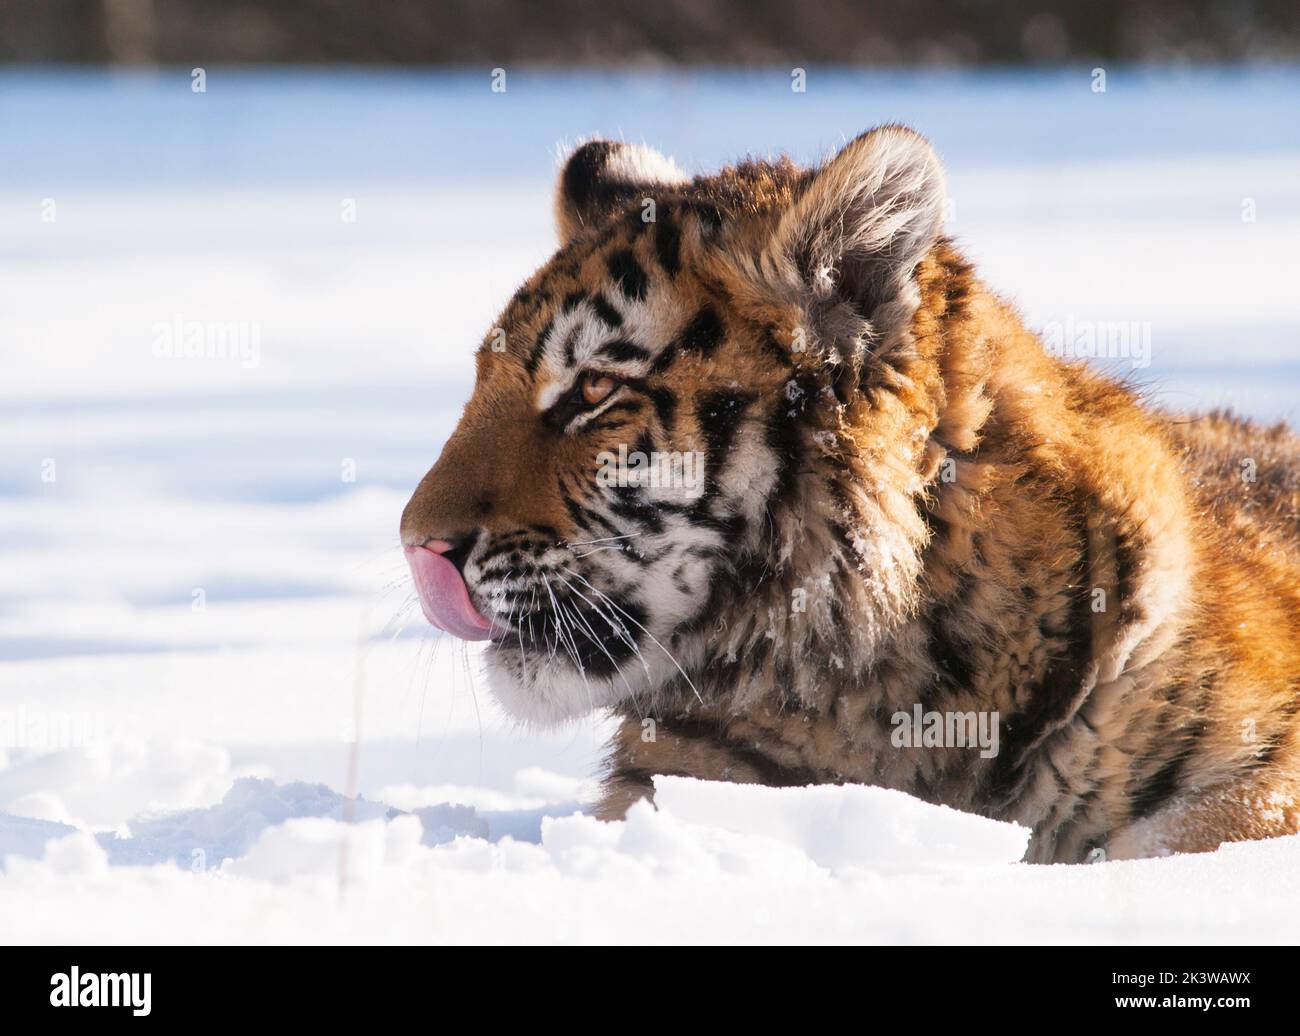 Tigre de Sibérie, Panthera tigris altaica.Scène sauvage avec animal dangereux.Hiver froid à la taïga, Russie.Tigre dans la nature sauvage d'hiver, couché sur le sno Banque D'Images